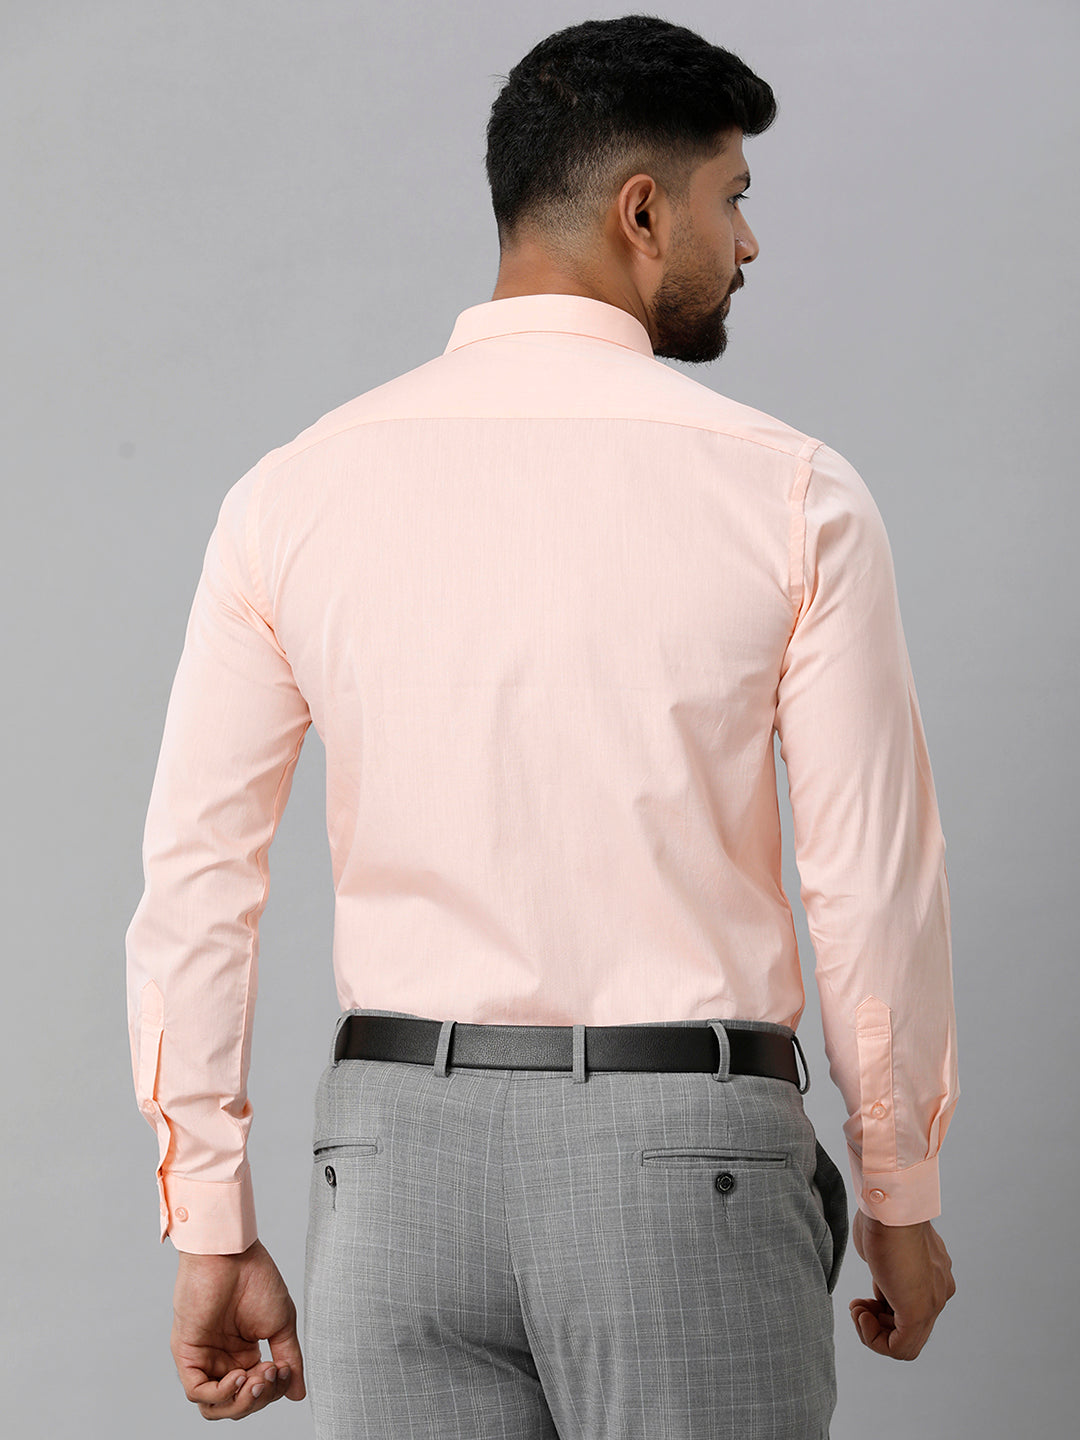 Mens Premium Cotton Formal Shirt Full Sleeves Light Orange MH G117-Back view